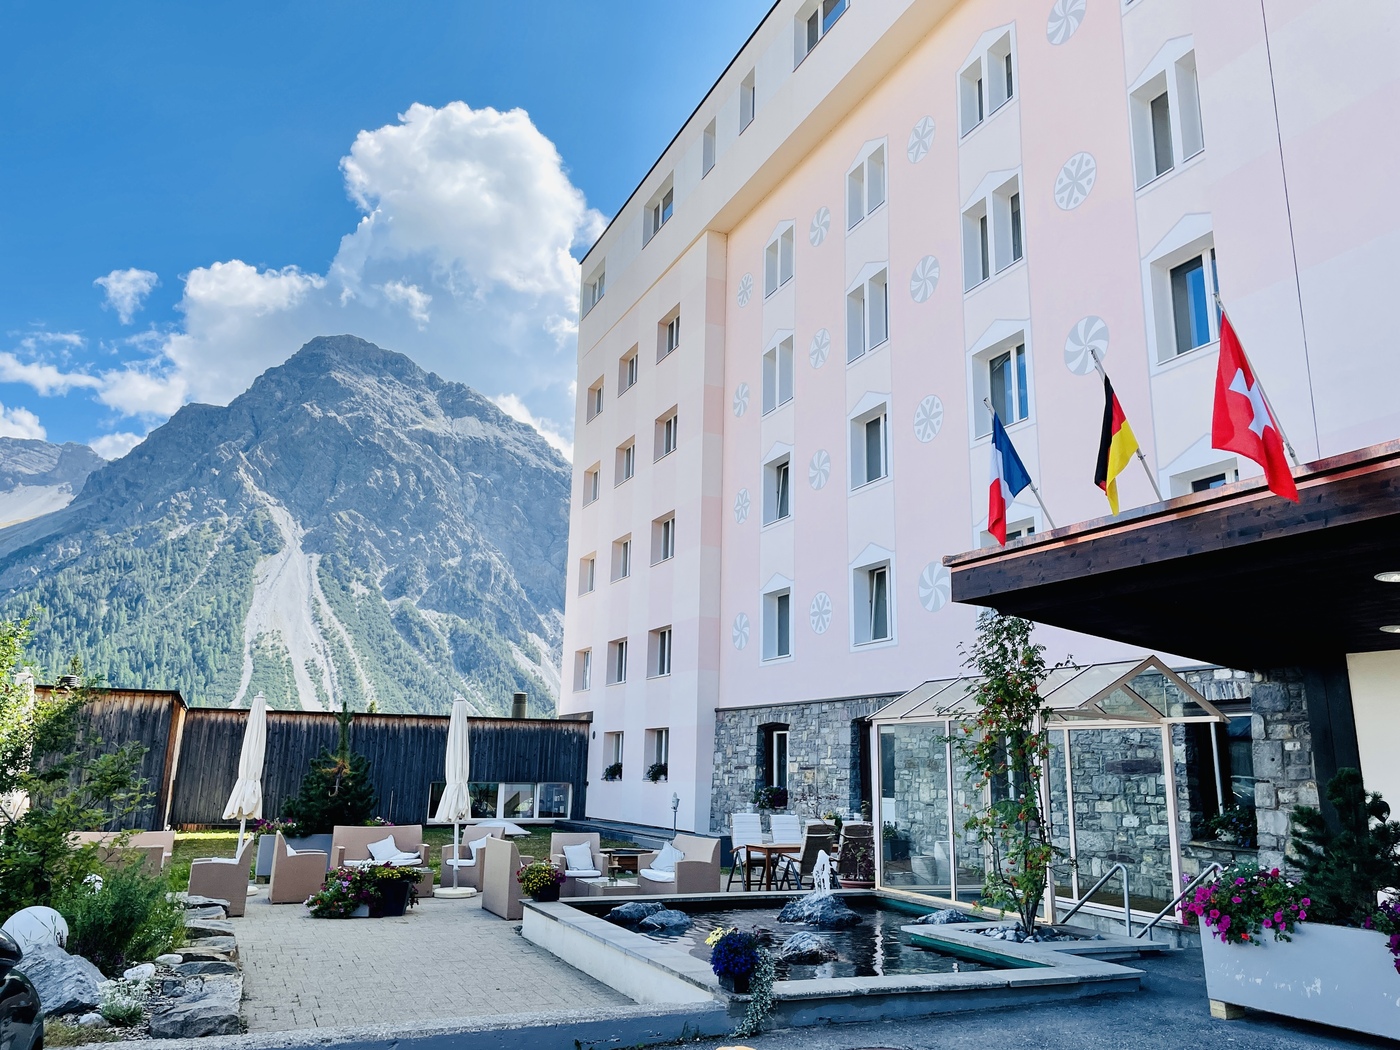 Sunstar Hotel Arosa Schweiz 60 - Familienurlaub in der Schweiz im Sunstar Hotel Arosa